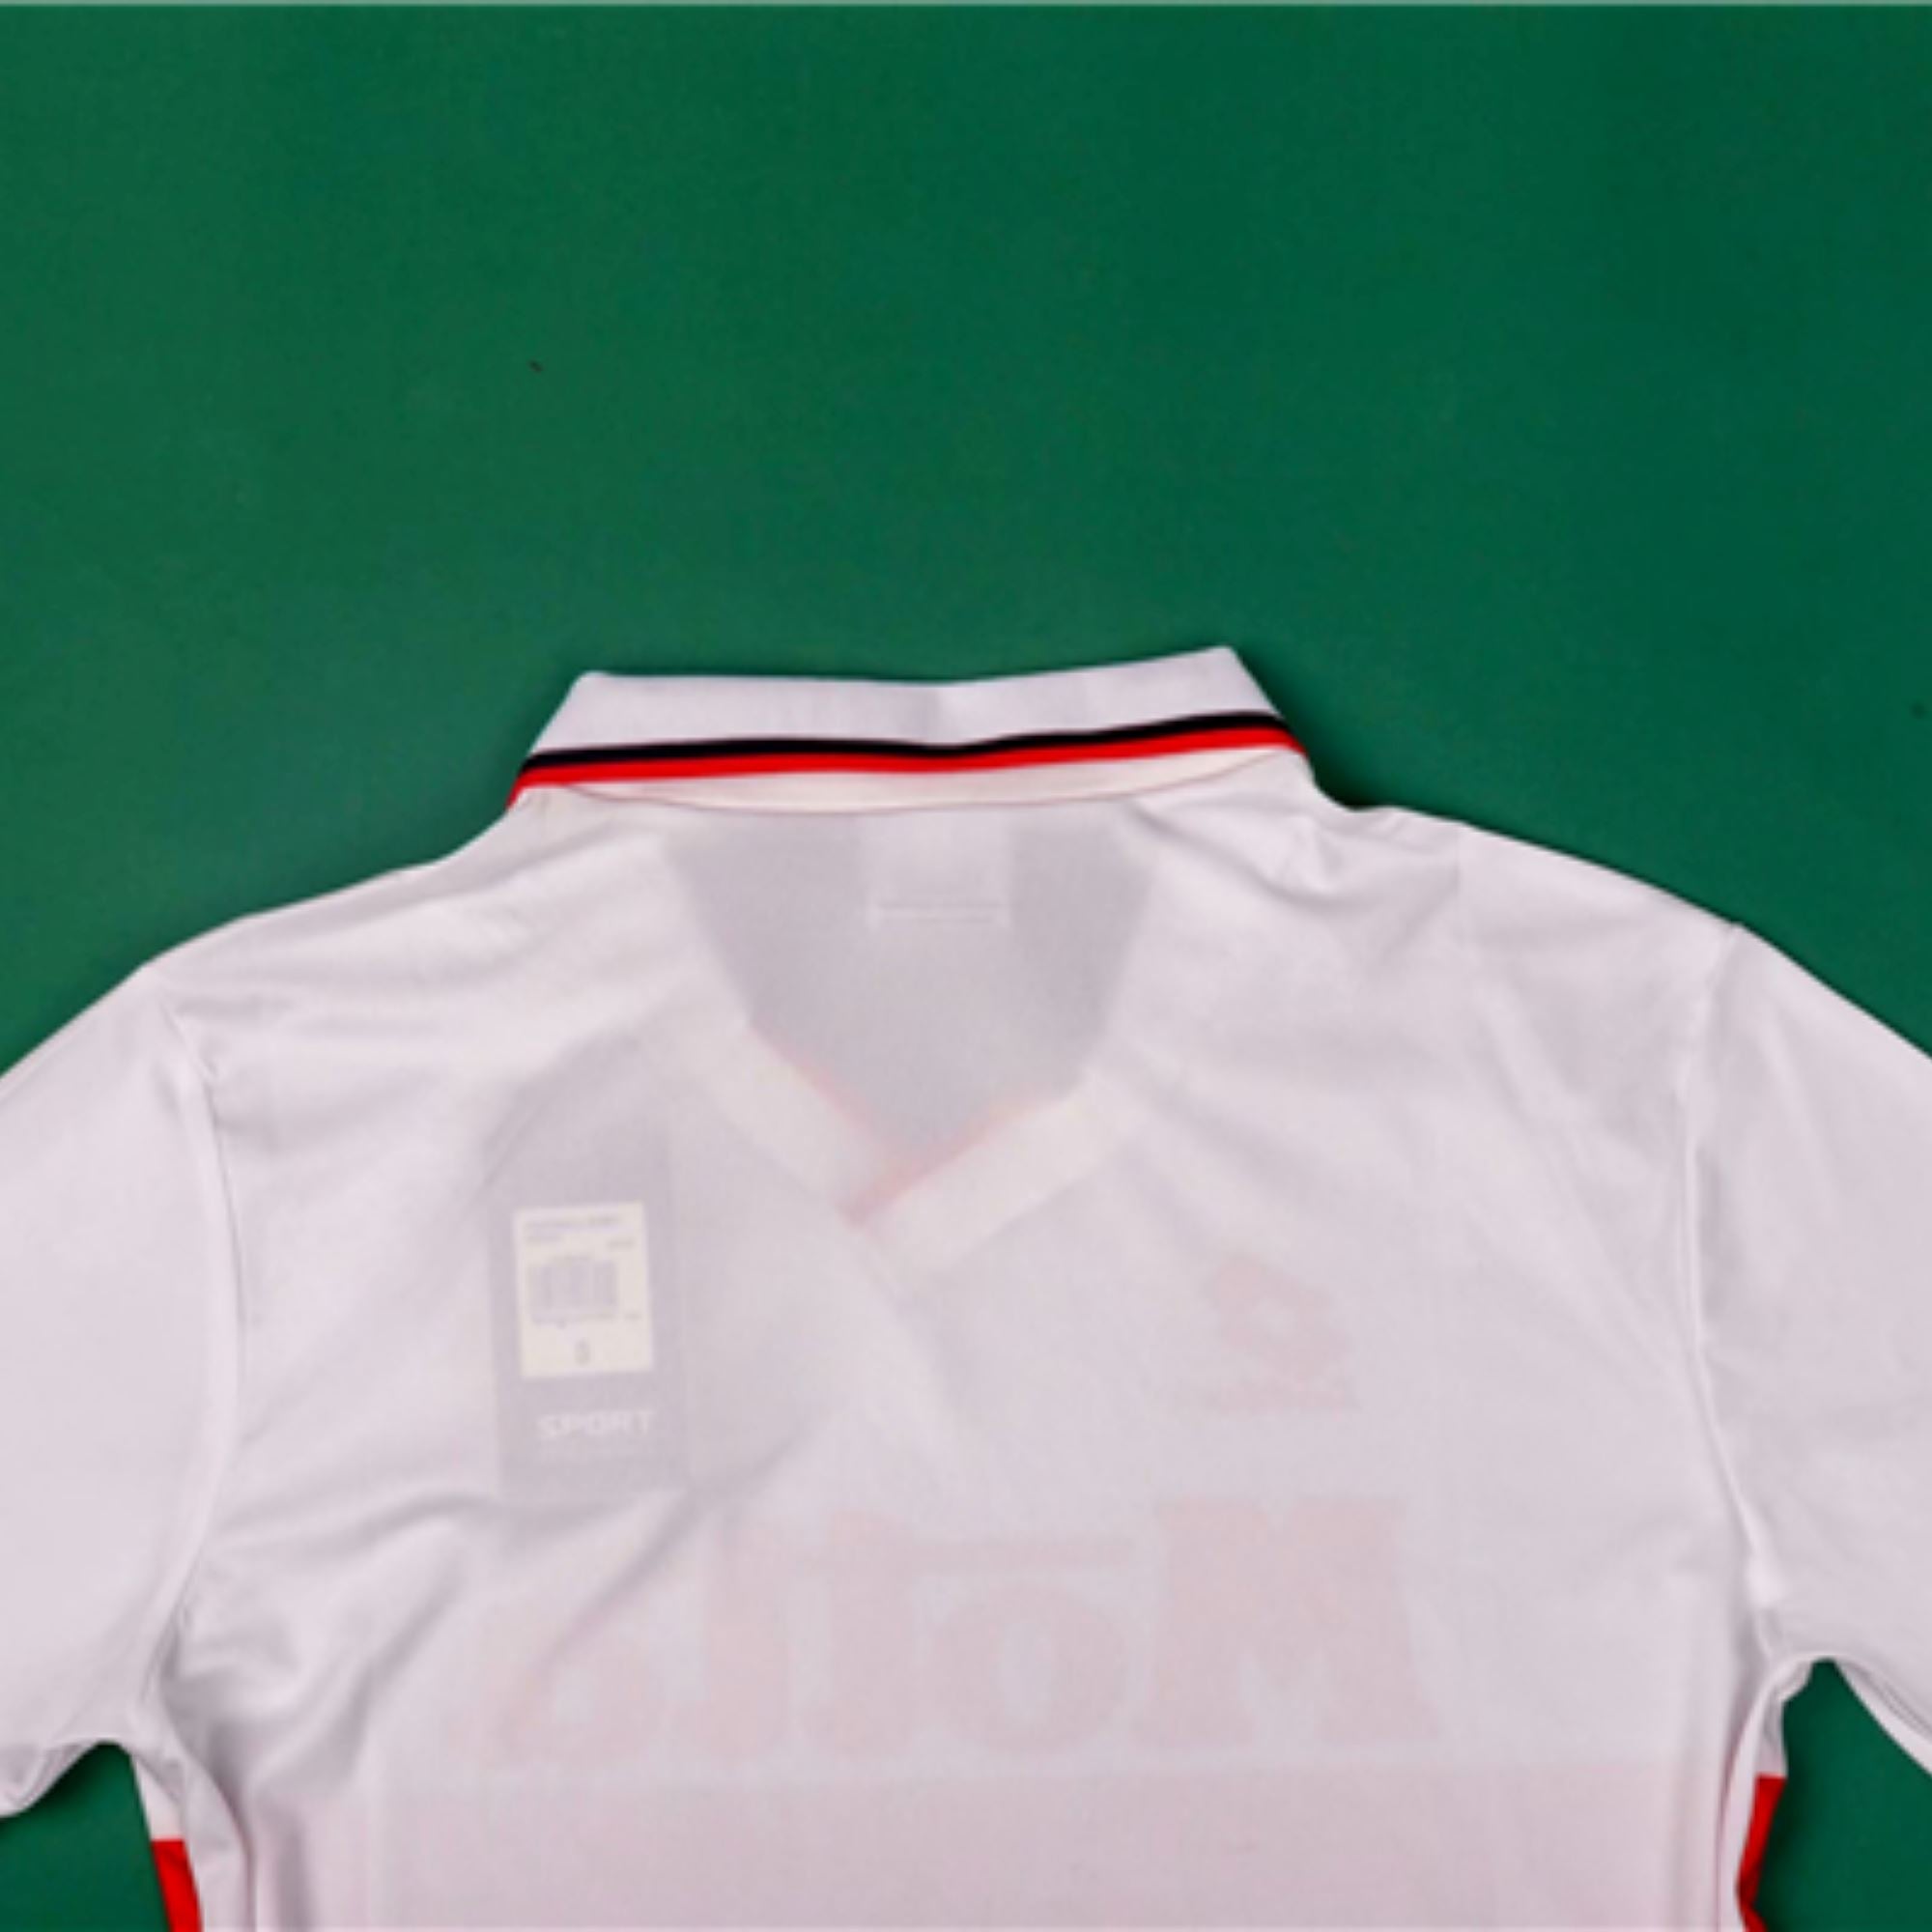 93/94 AC Milan Away Jersey - ITASPORT